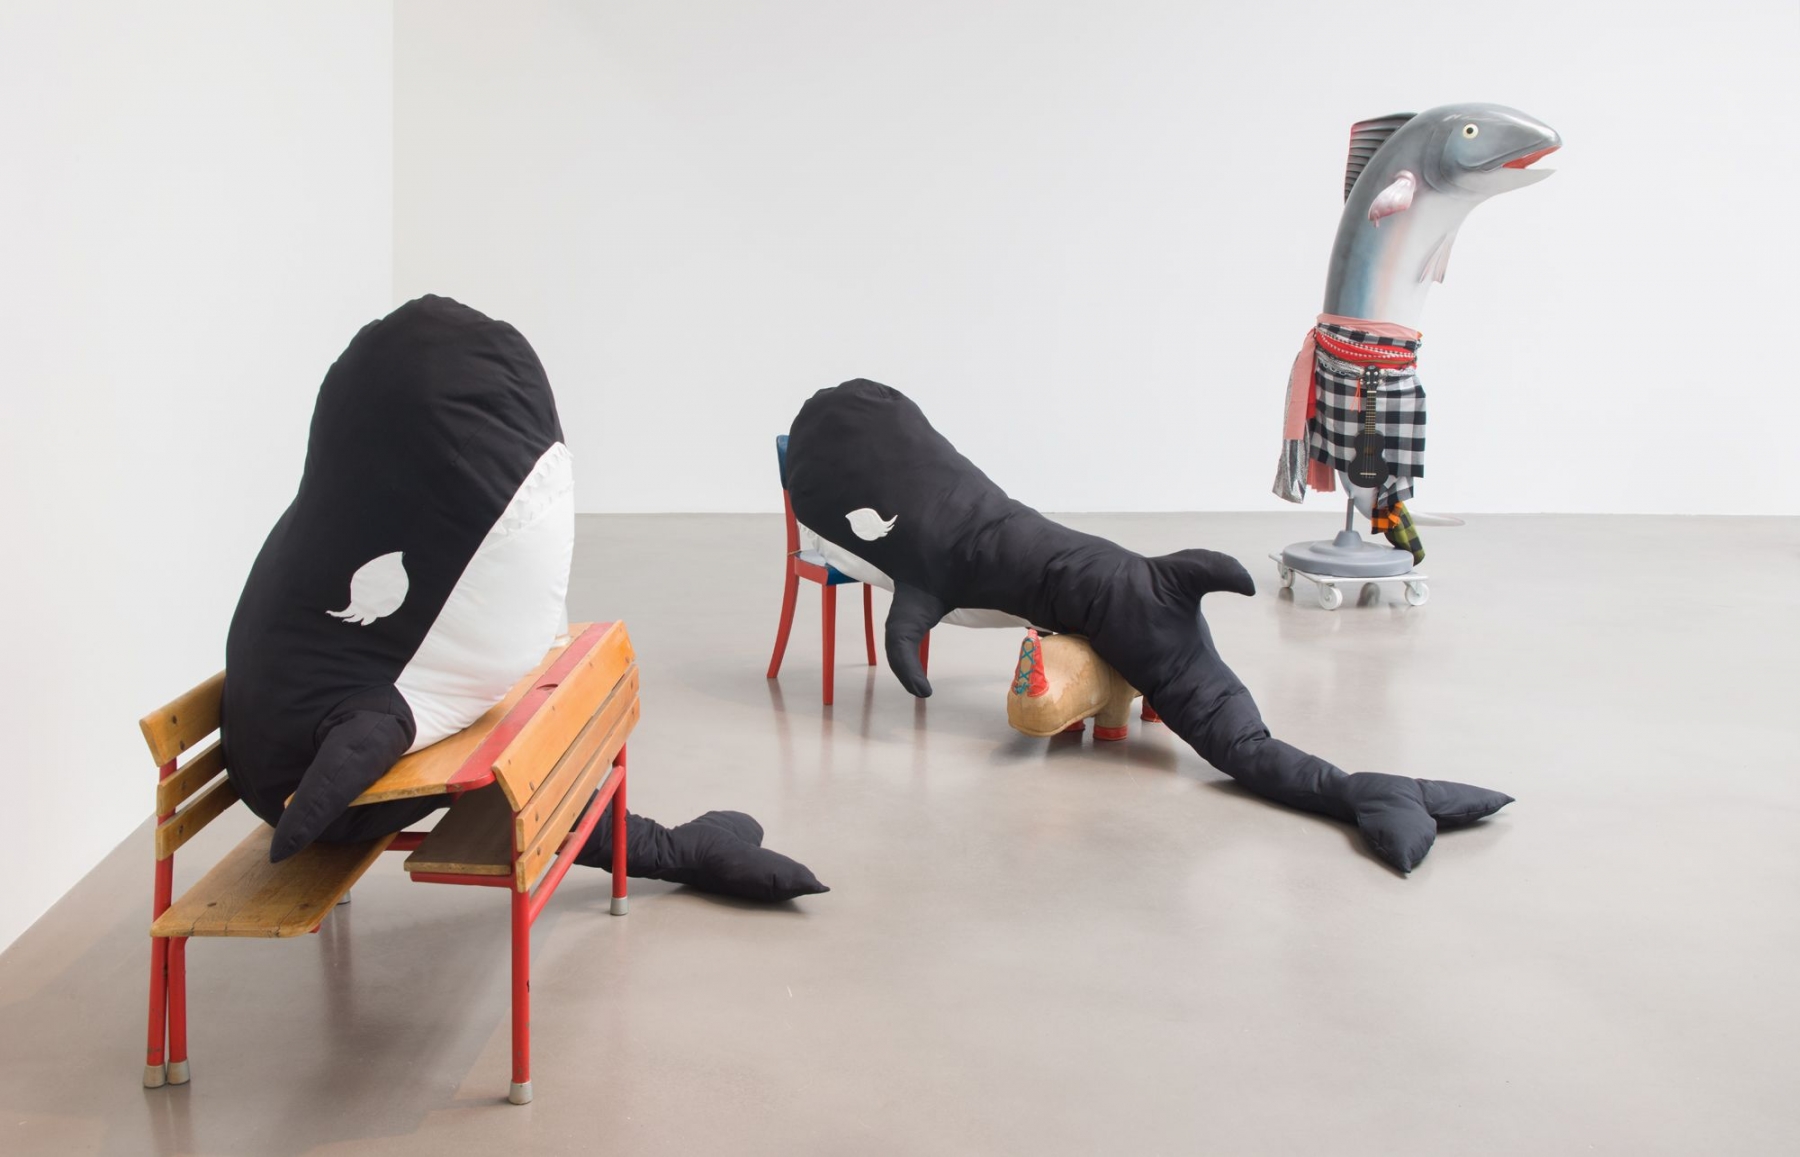 Installation view, Cosima von Bonin, WHAT IF IT BARKS?, Petzel Gallery, 2018